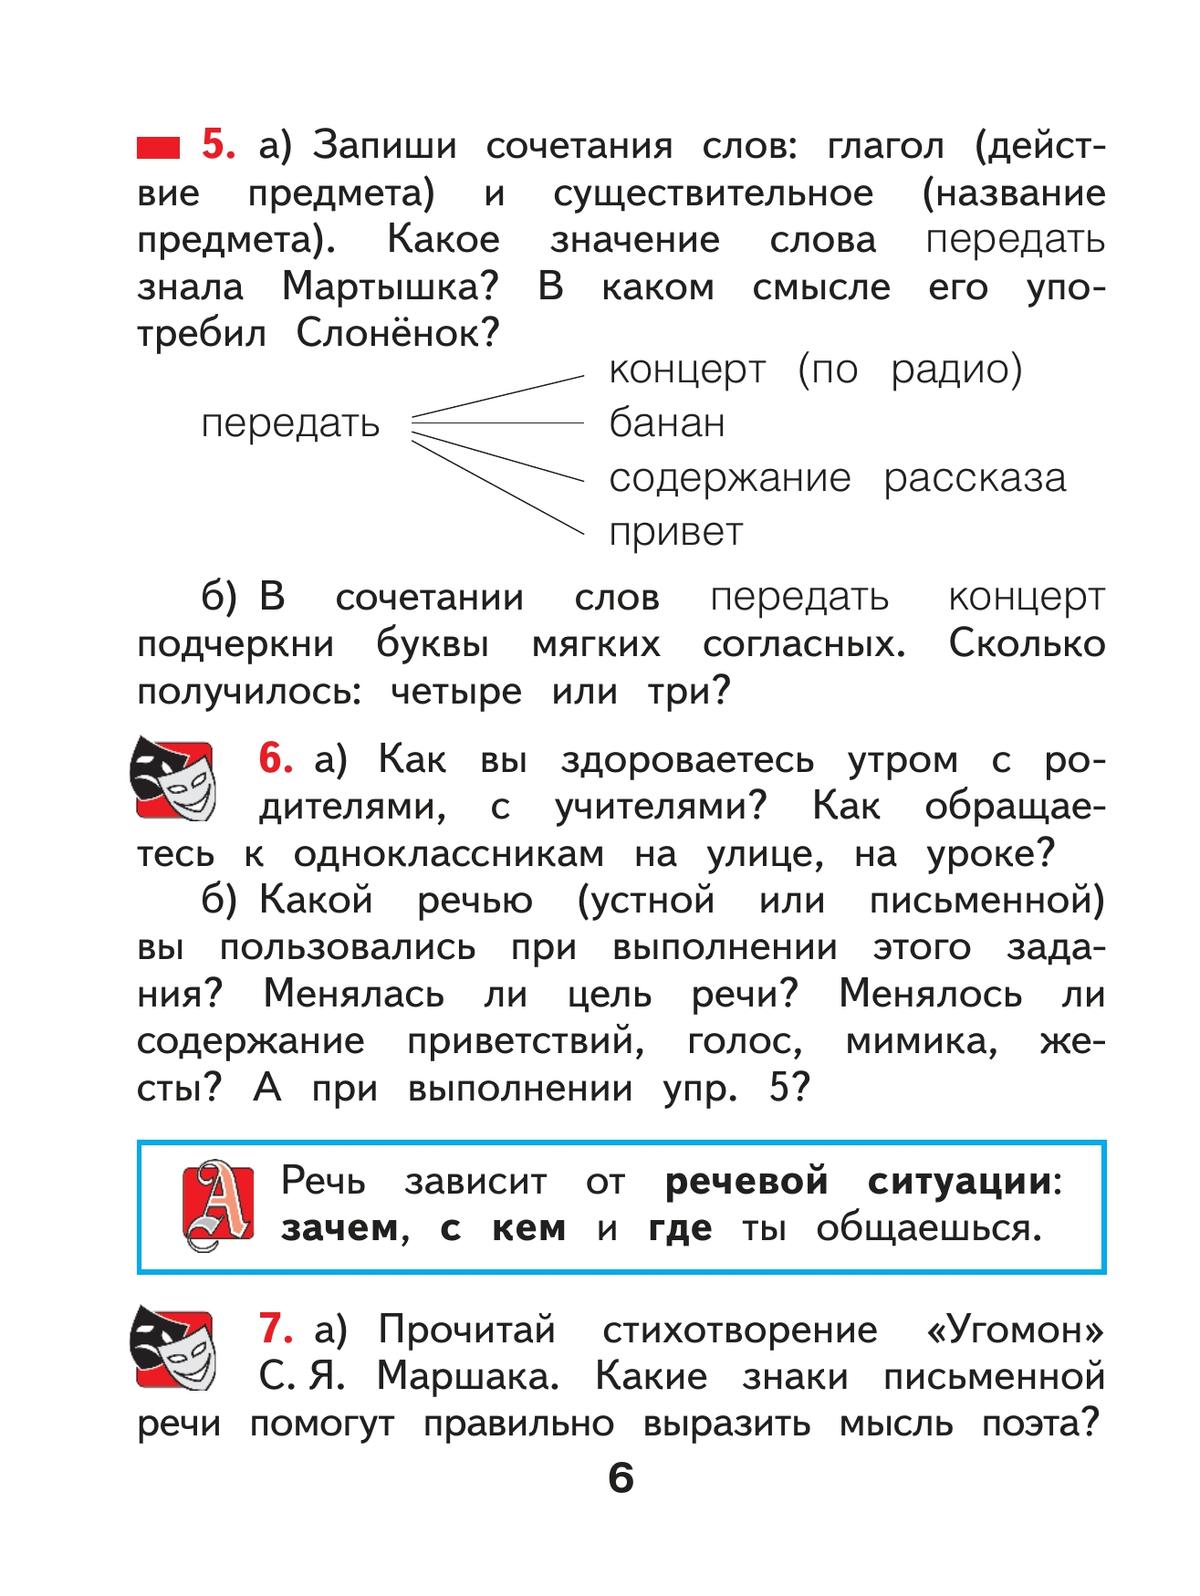 Русский язык. 2 класс. Учебное пособие. В 2 ч. Часть 1 6